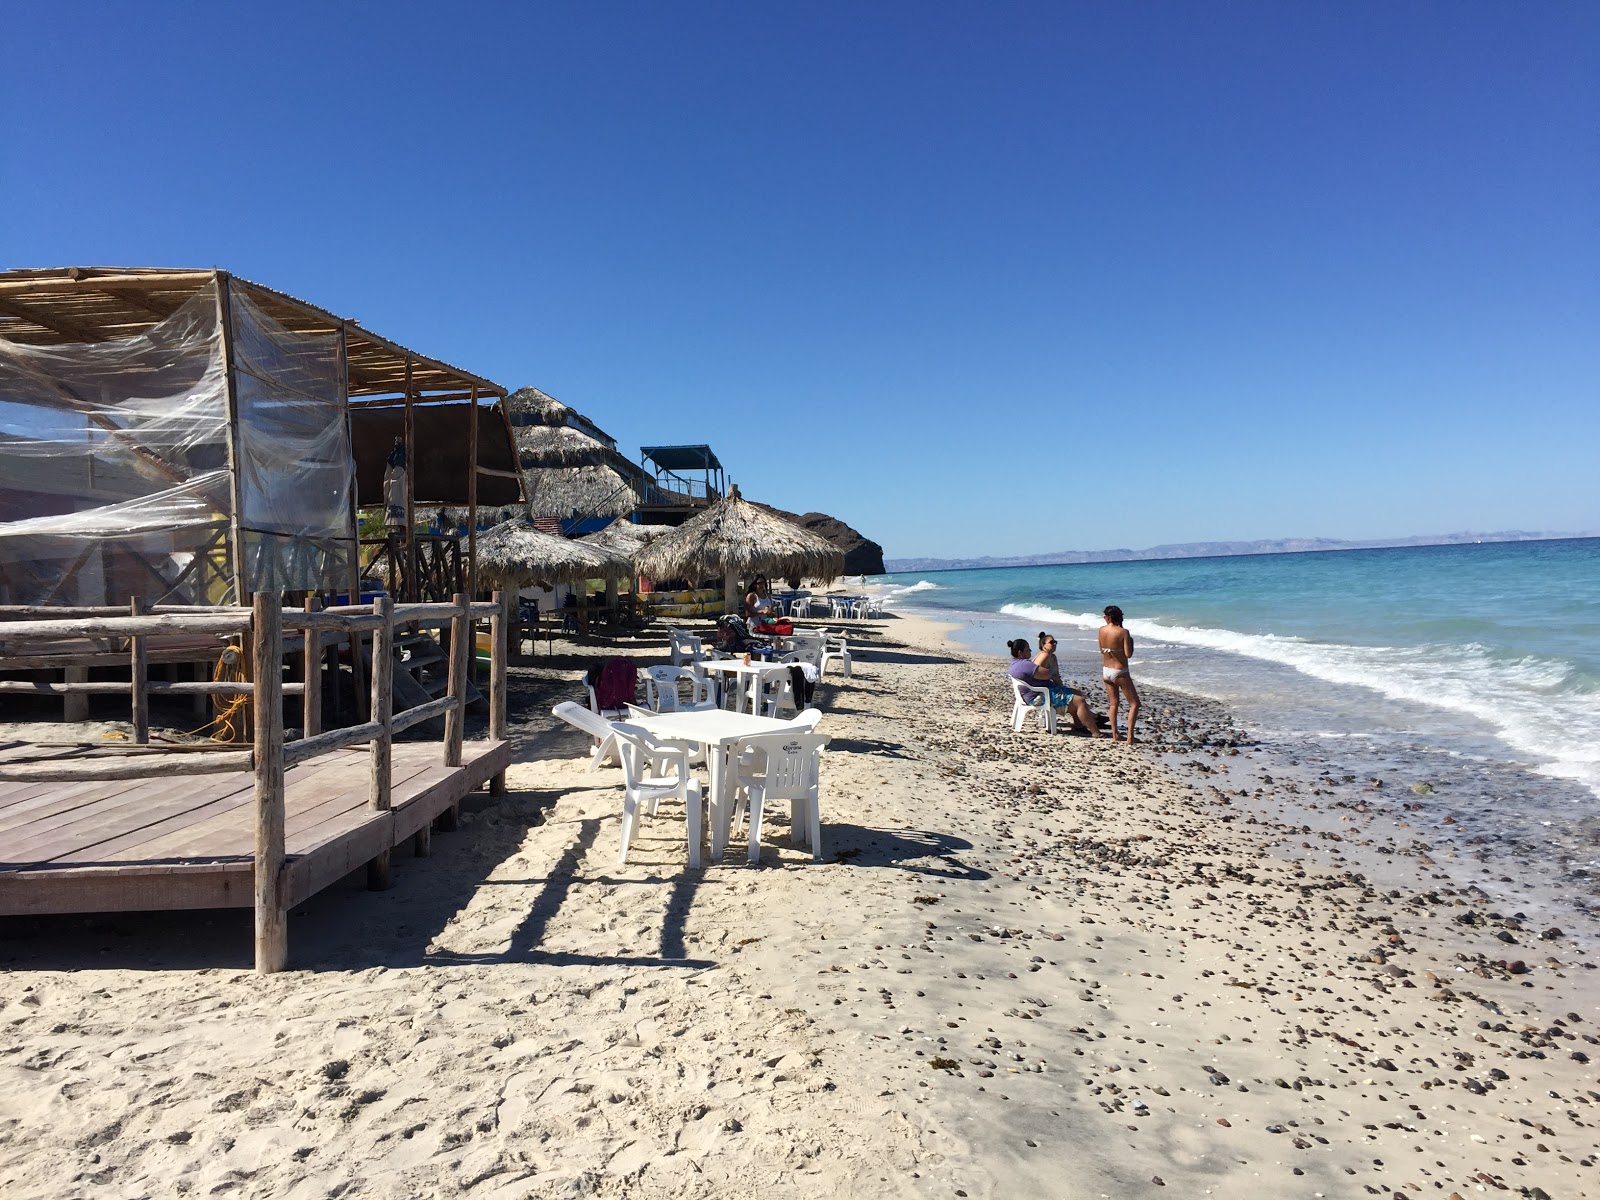 Fotografija Arbolito Beach II priljubljeno mesto med poznavalci sprostitve